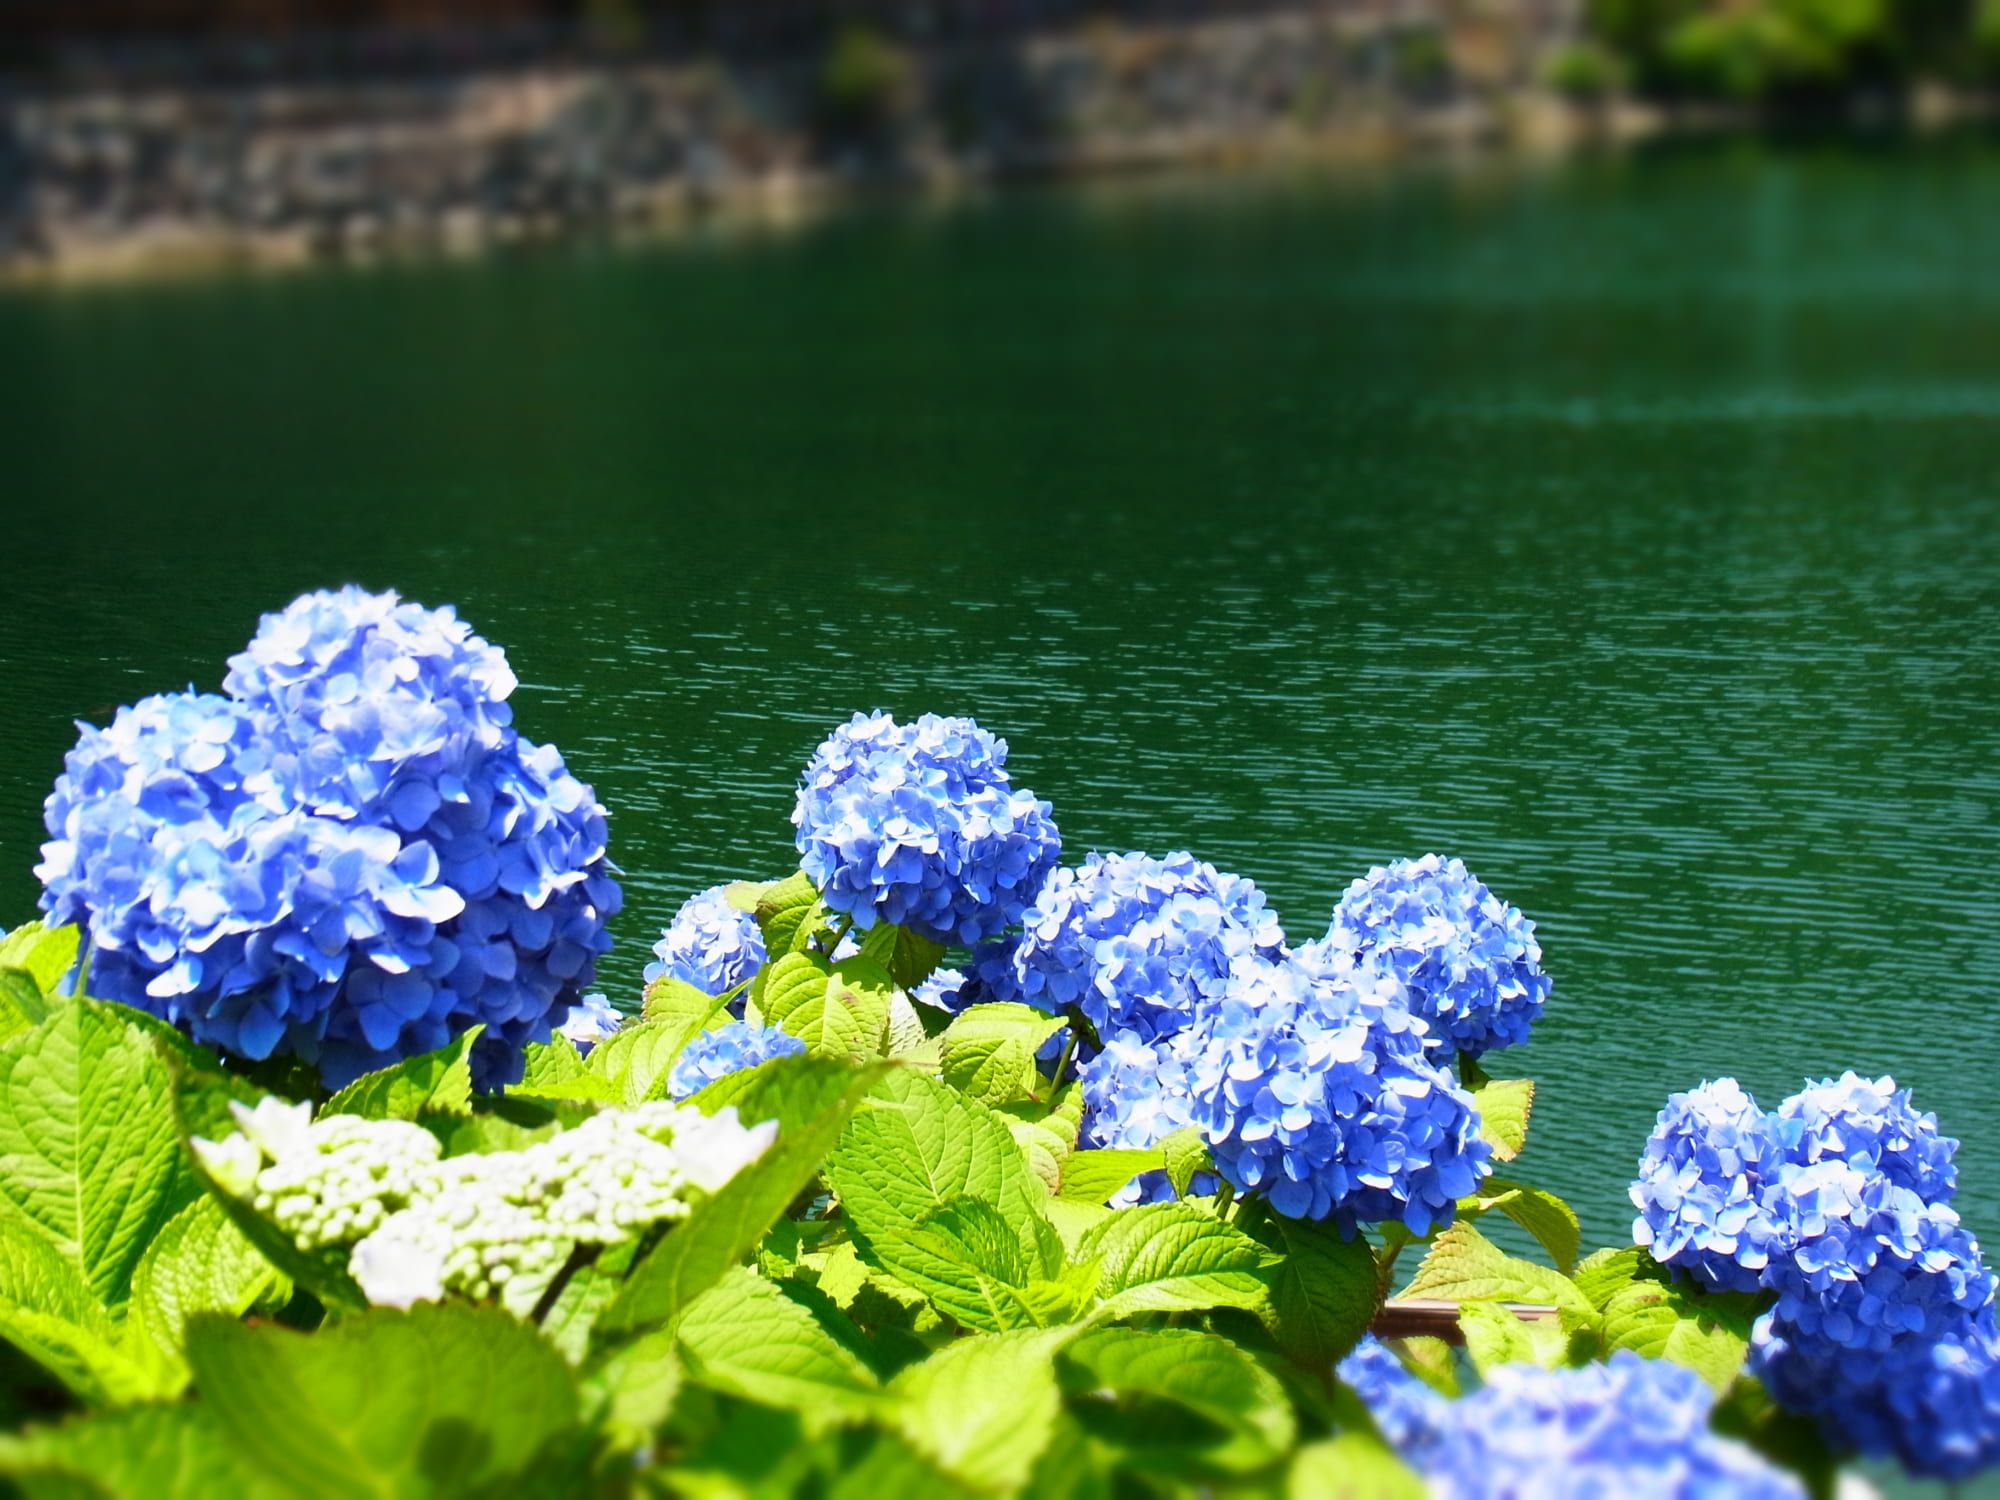 Hãy chiêm ngưỡng vẻ đẹp lãng mạn và thần tiên của hoa cẩm tú cầu Kanagawa trong hình ảnh đầy sắc màu và bình yên.